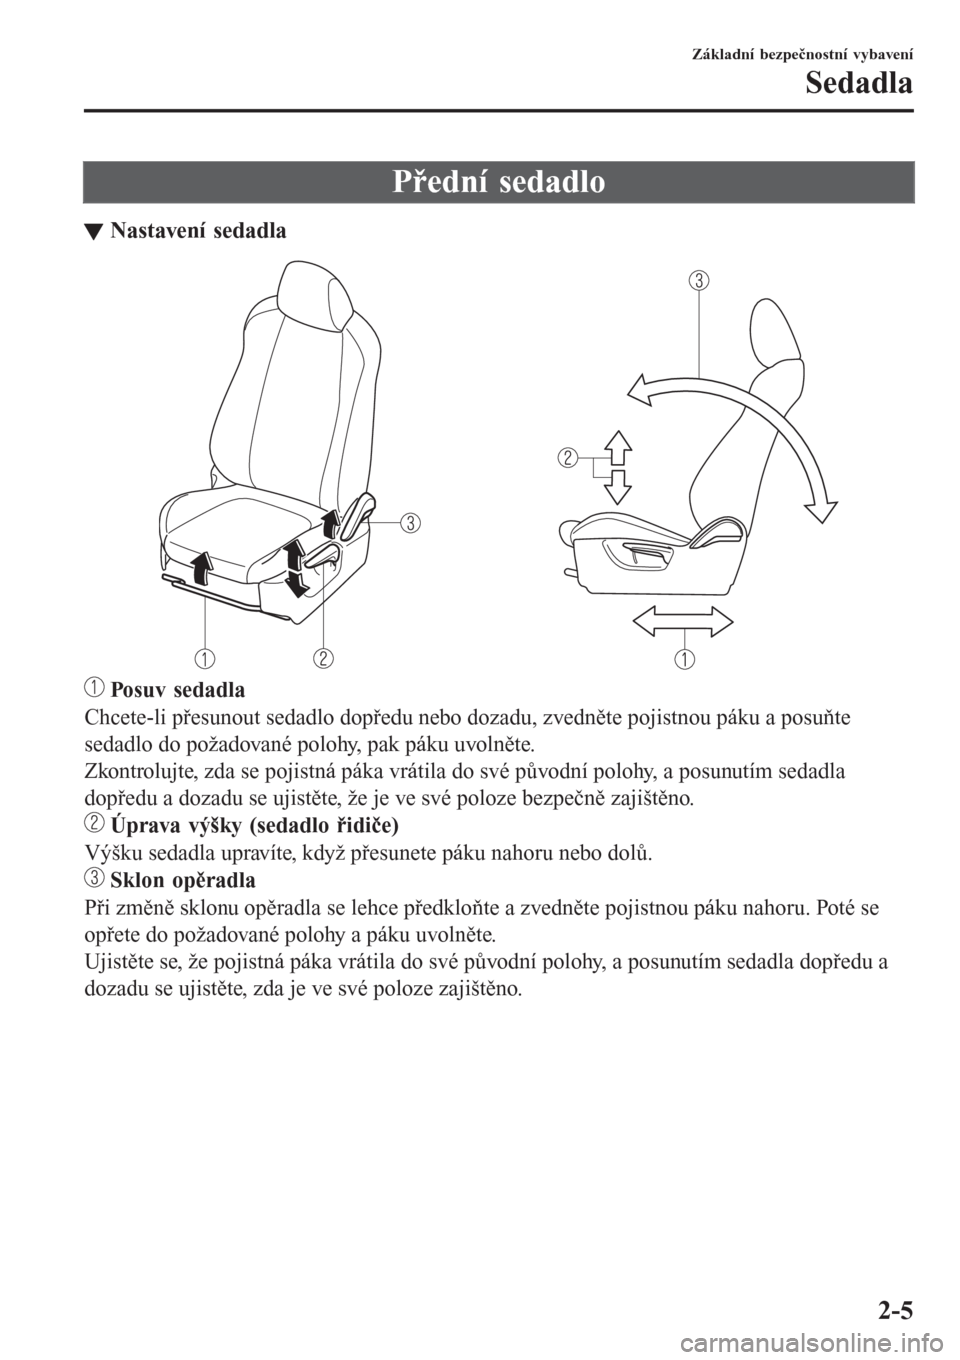 MAZDA MODEL CX-3 2016  Návod k obsluze (in Czech) Přední sedadlo
tNastavení sedadla
 Posuv sedadla
Chcete-li přesunout sedadlo dopředu nebo dozadu, zvedněte pojistnou páku a posuňte
sedadlo do požadované polohy, pak páku uvolněte.
Zkontro